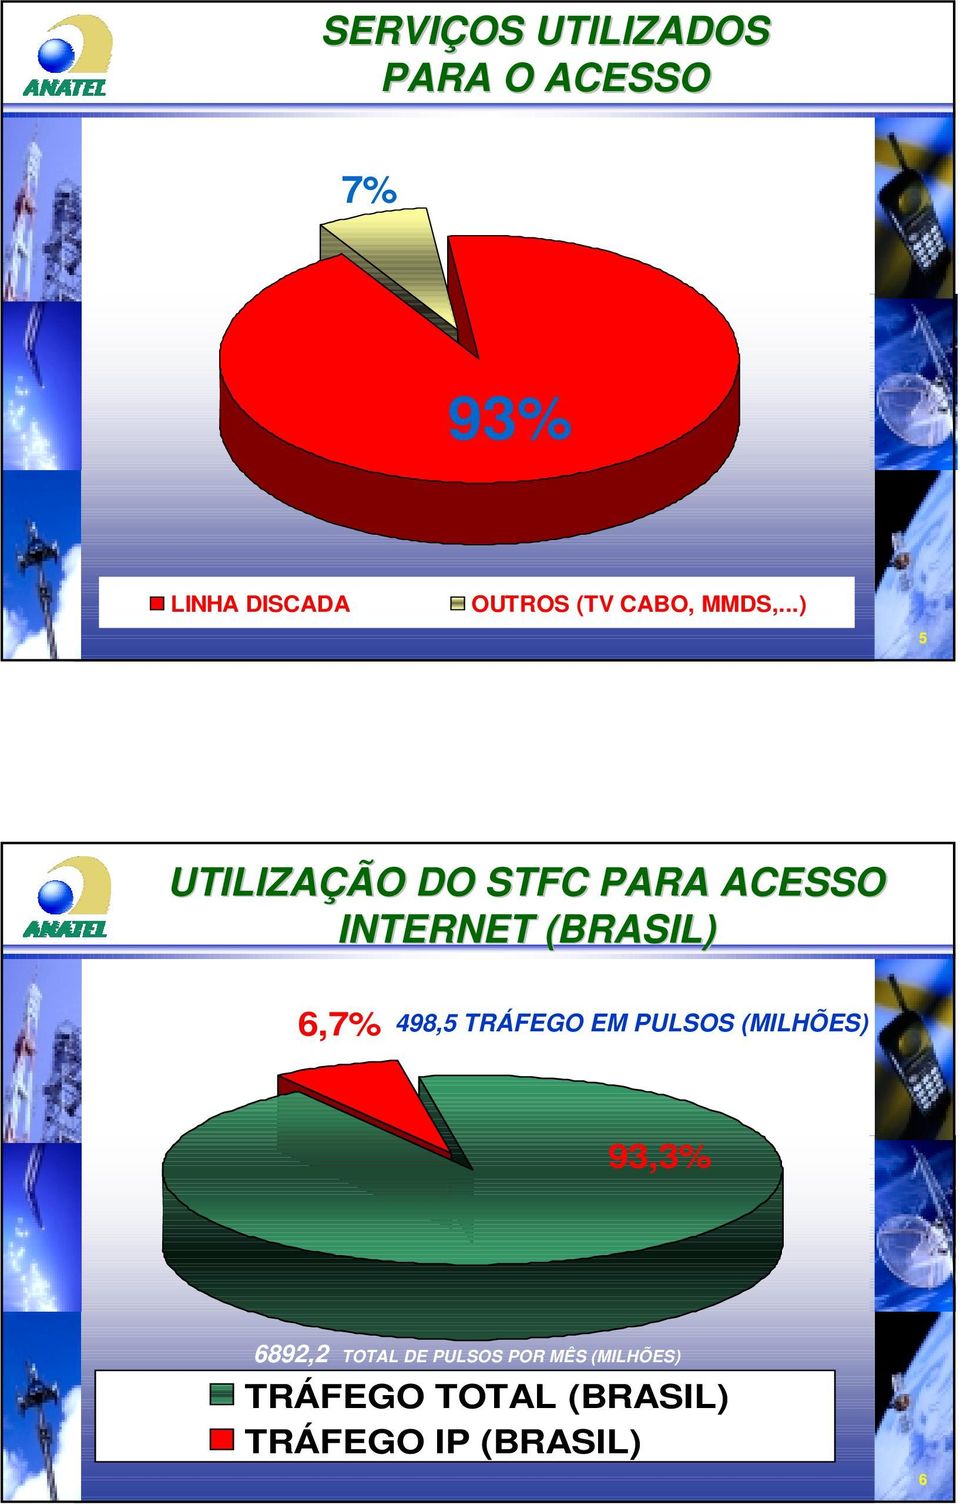 ..) 5 UTILIZAÇÃO DO STFC PARA ACESSO INTERNET (BRASIL) 6,7% 498,5